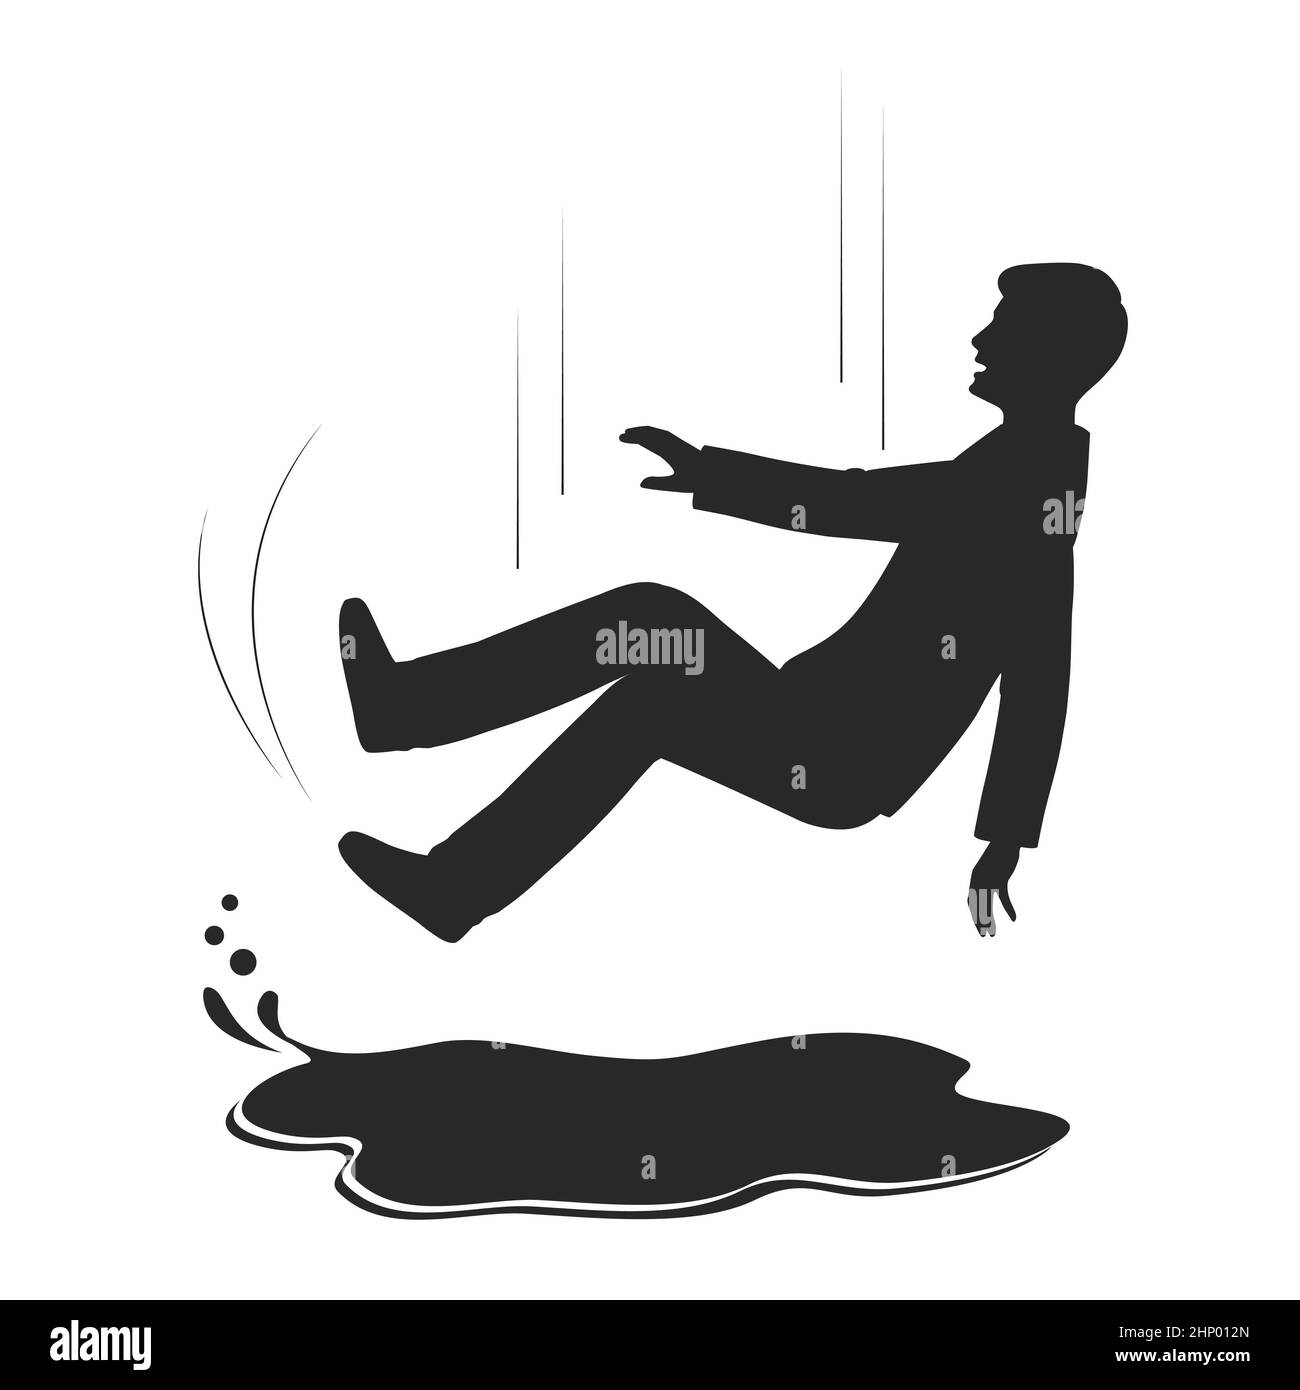 Man Slipping Wet Floor Stock Illustrations – 162 Man Slipping Wet